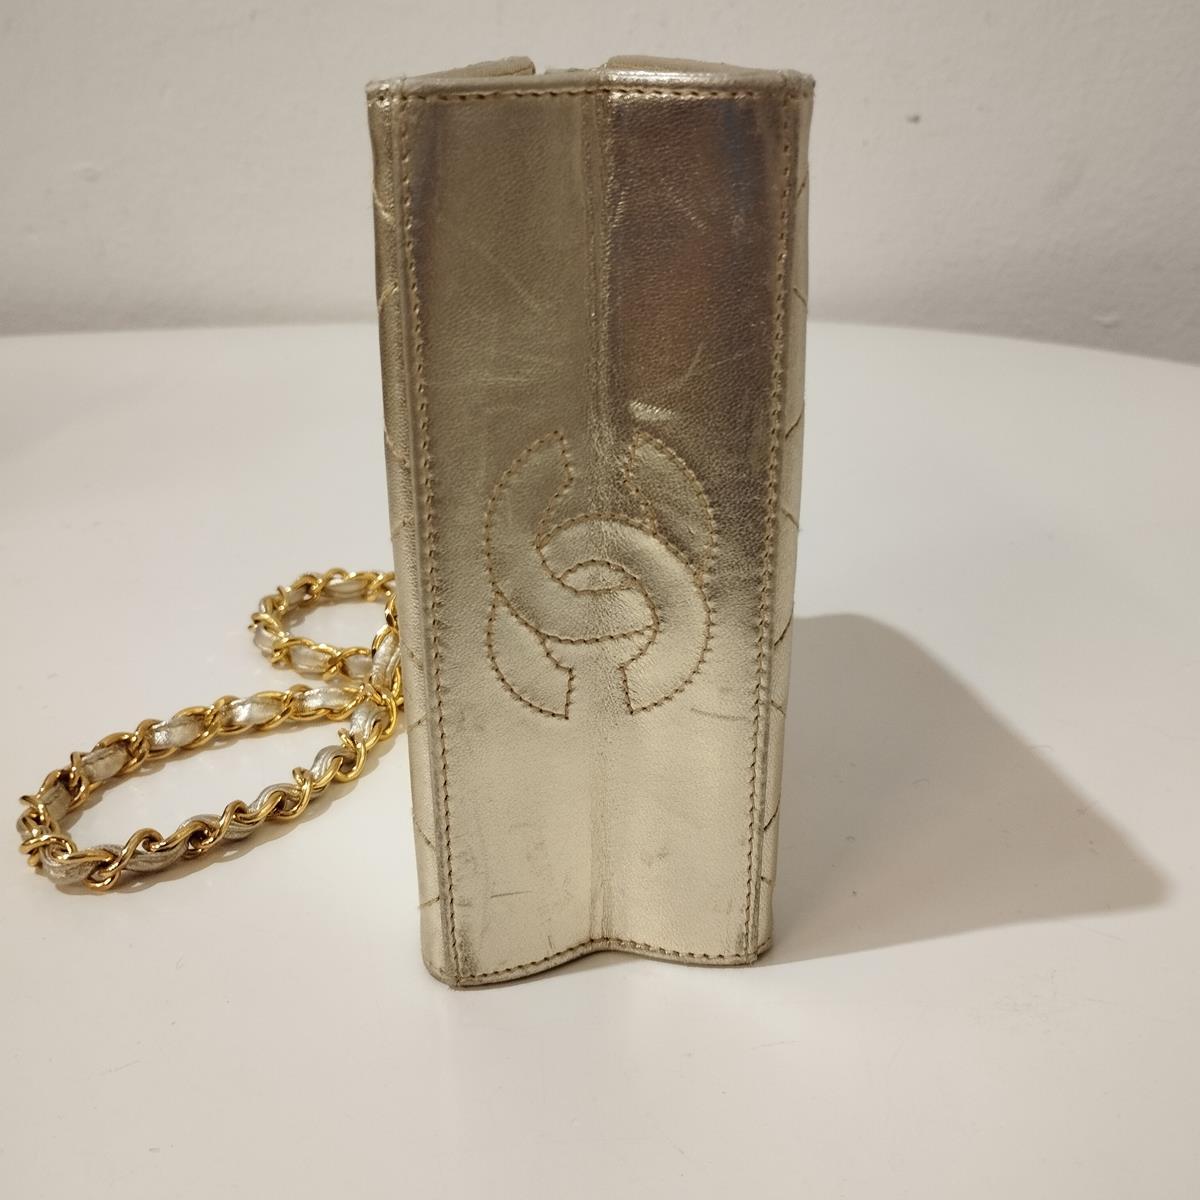 Chanel Mini sac size Unica In Excellent Condition For Sale In Gazzaniga (BG), IT